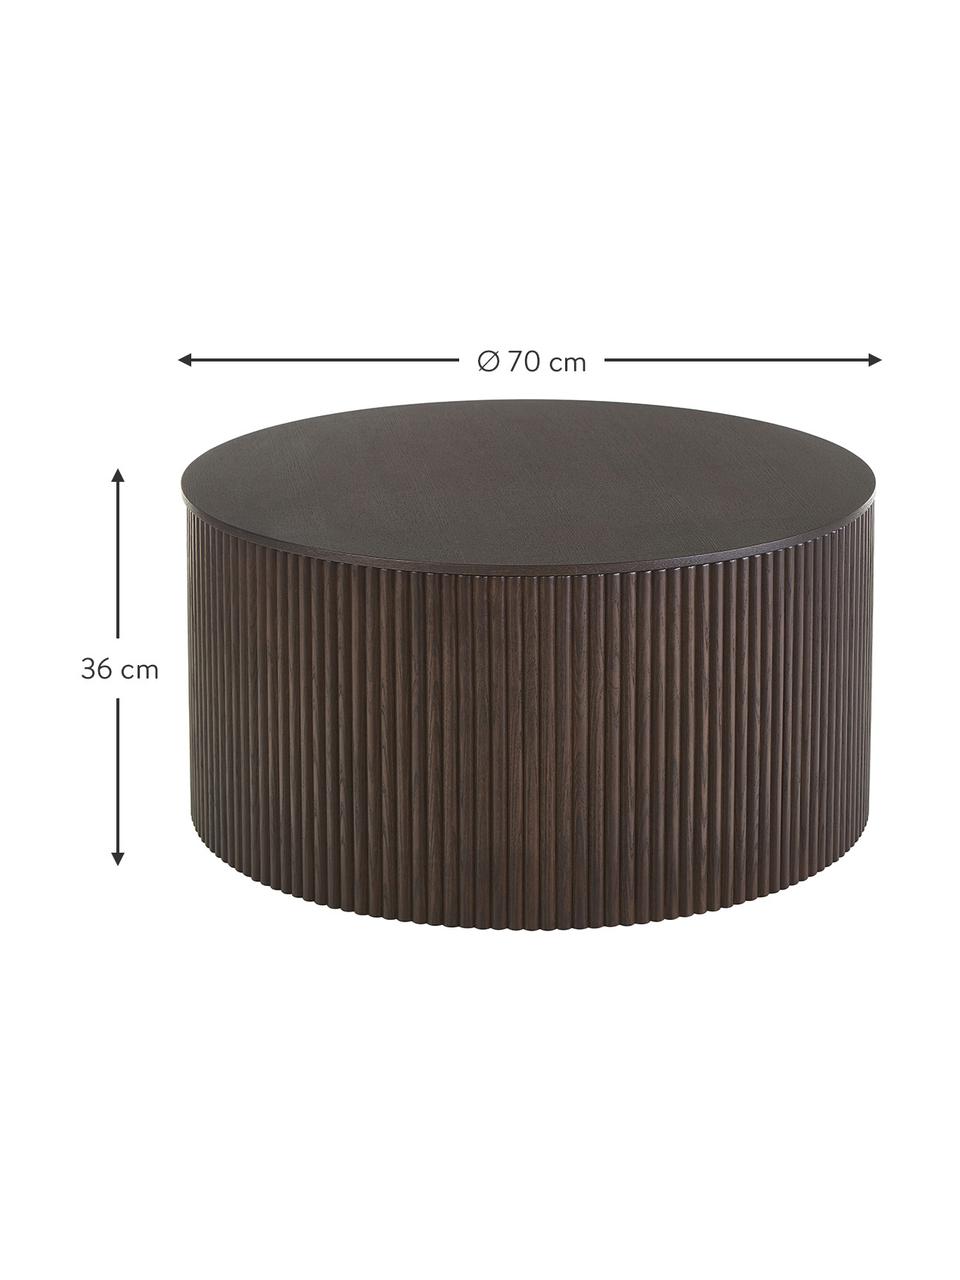 Table basse ronde avec rangement Nele, MDF (panneau en fibres de bois à densité moyenne) avec placage en frêne, Bois foncé, Ø 70 x haut. 36 cm